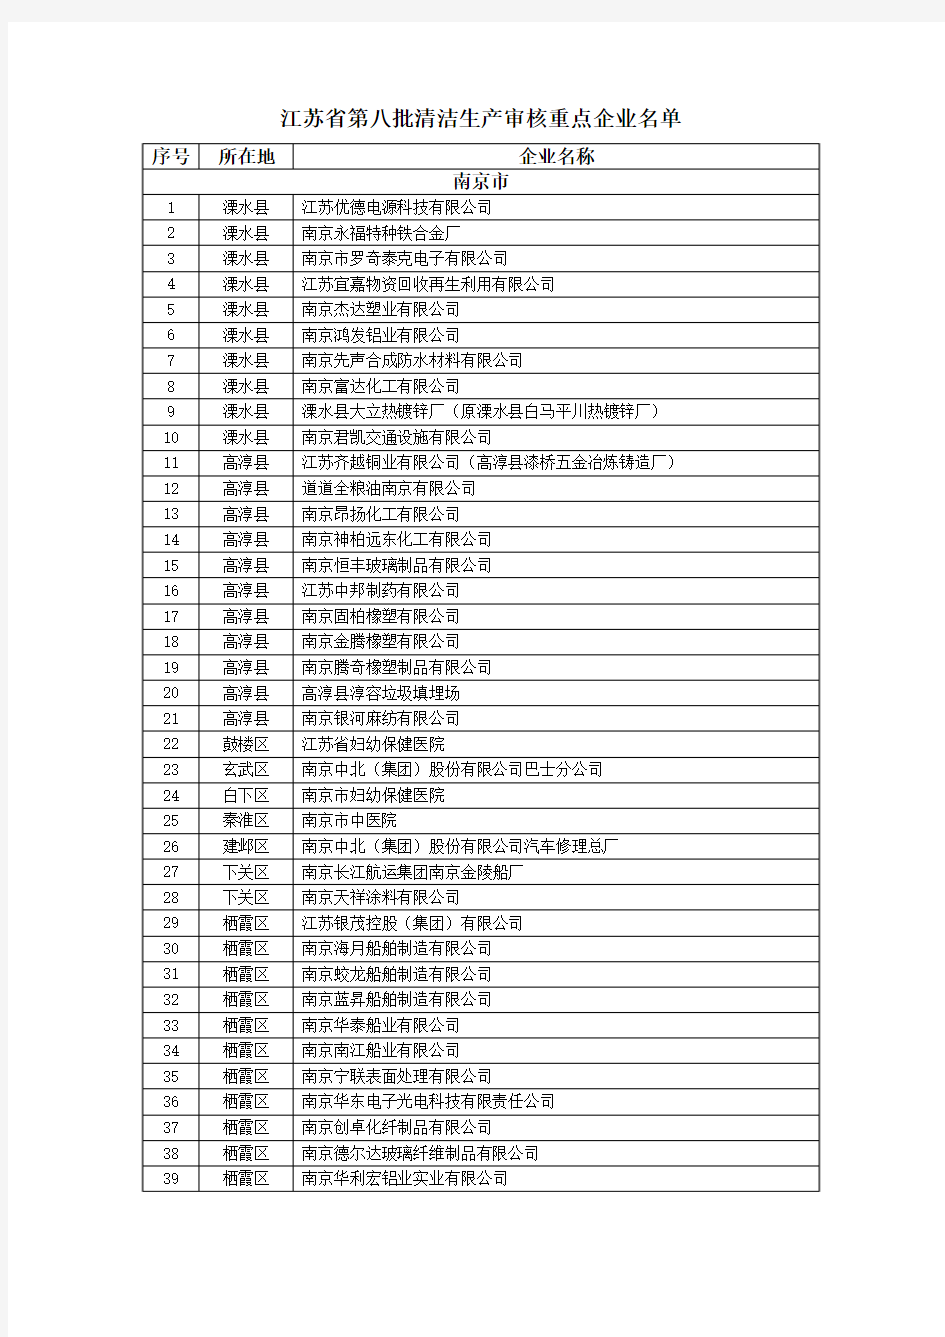 关于公布江苏省第八批清洁生产审核重点企业名单的通知(苏环办〔2012〕3号